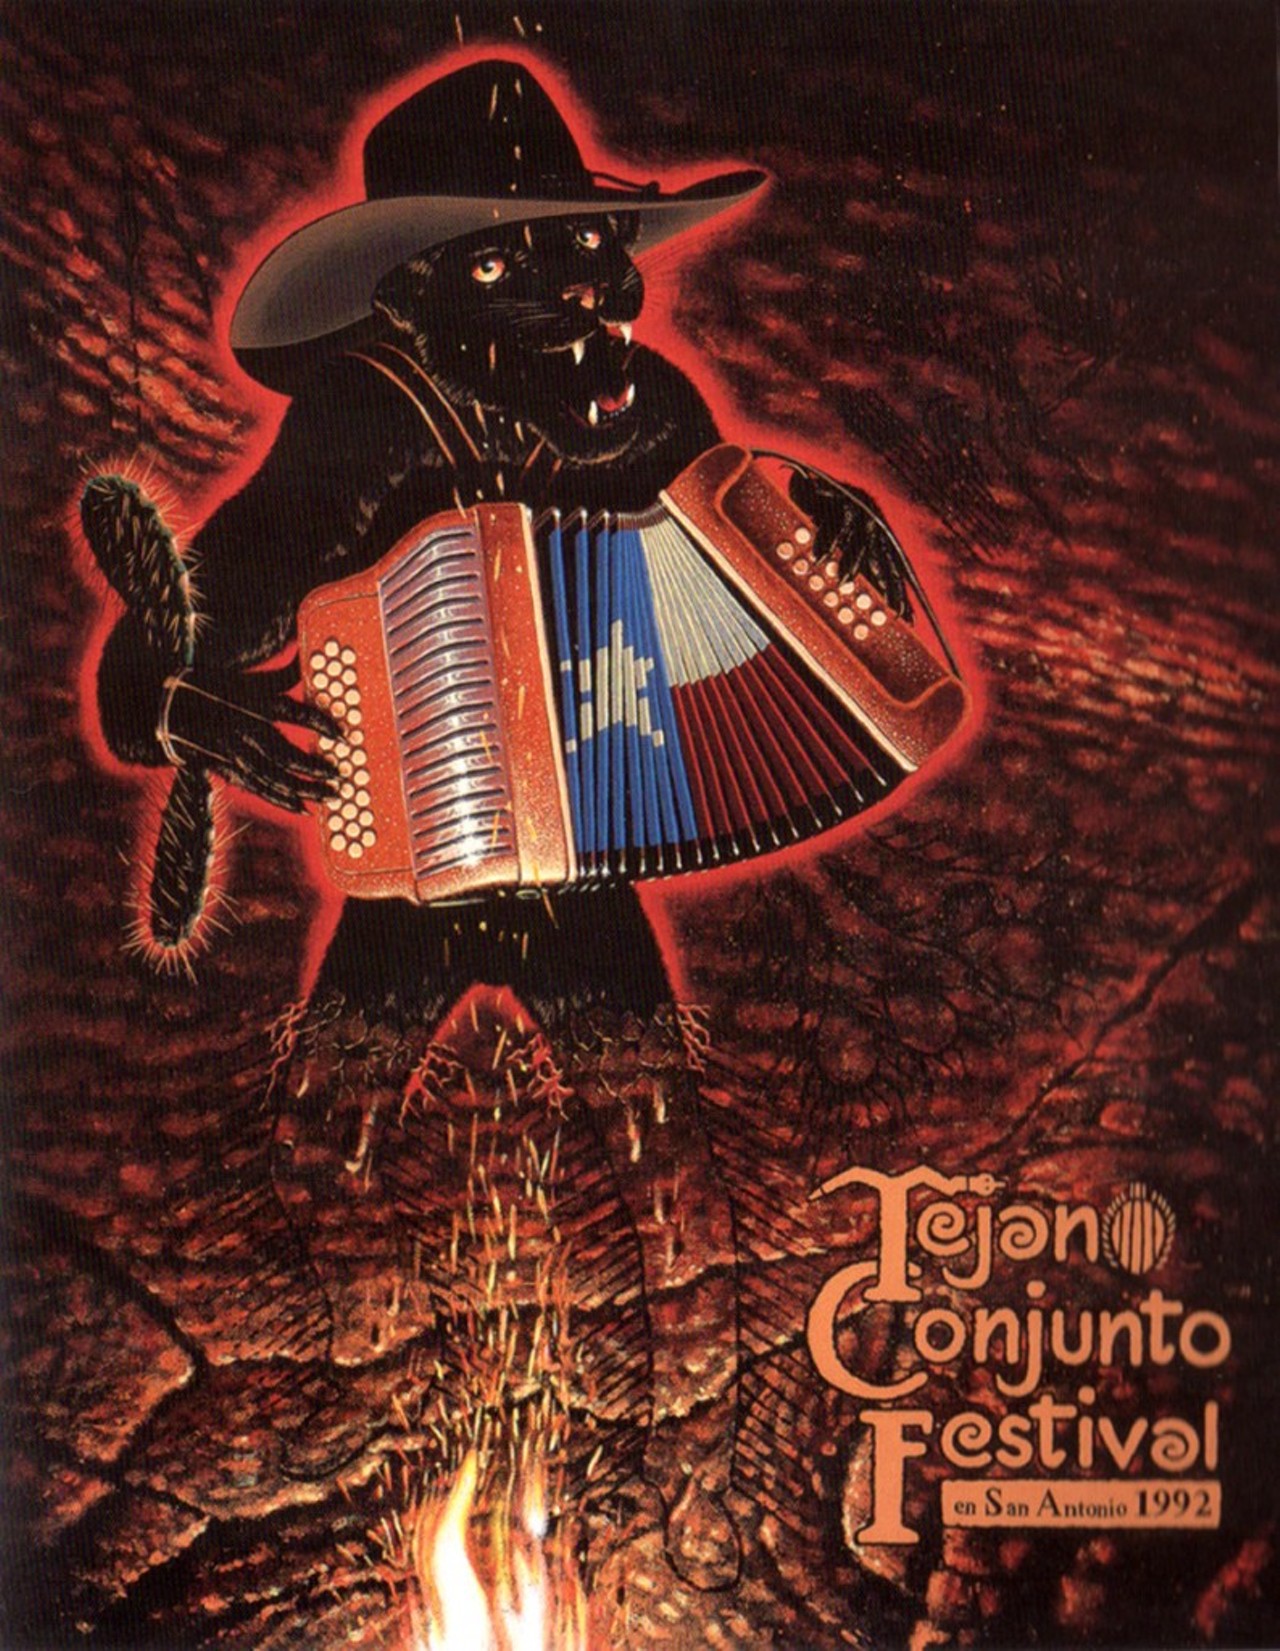 1992 Tejano Conjunto Festival poster by Clemente F. Guzman III